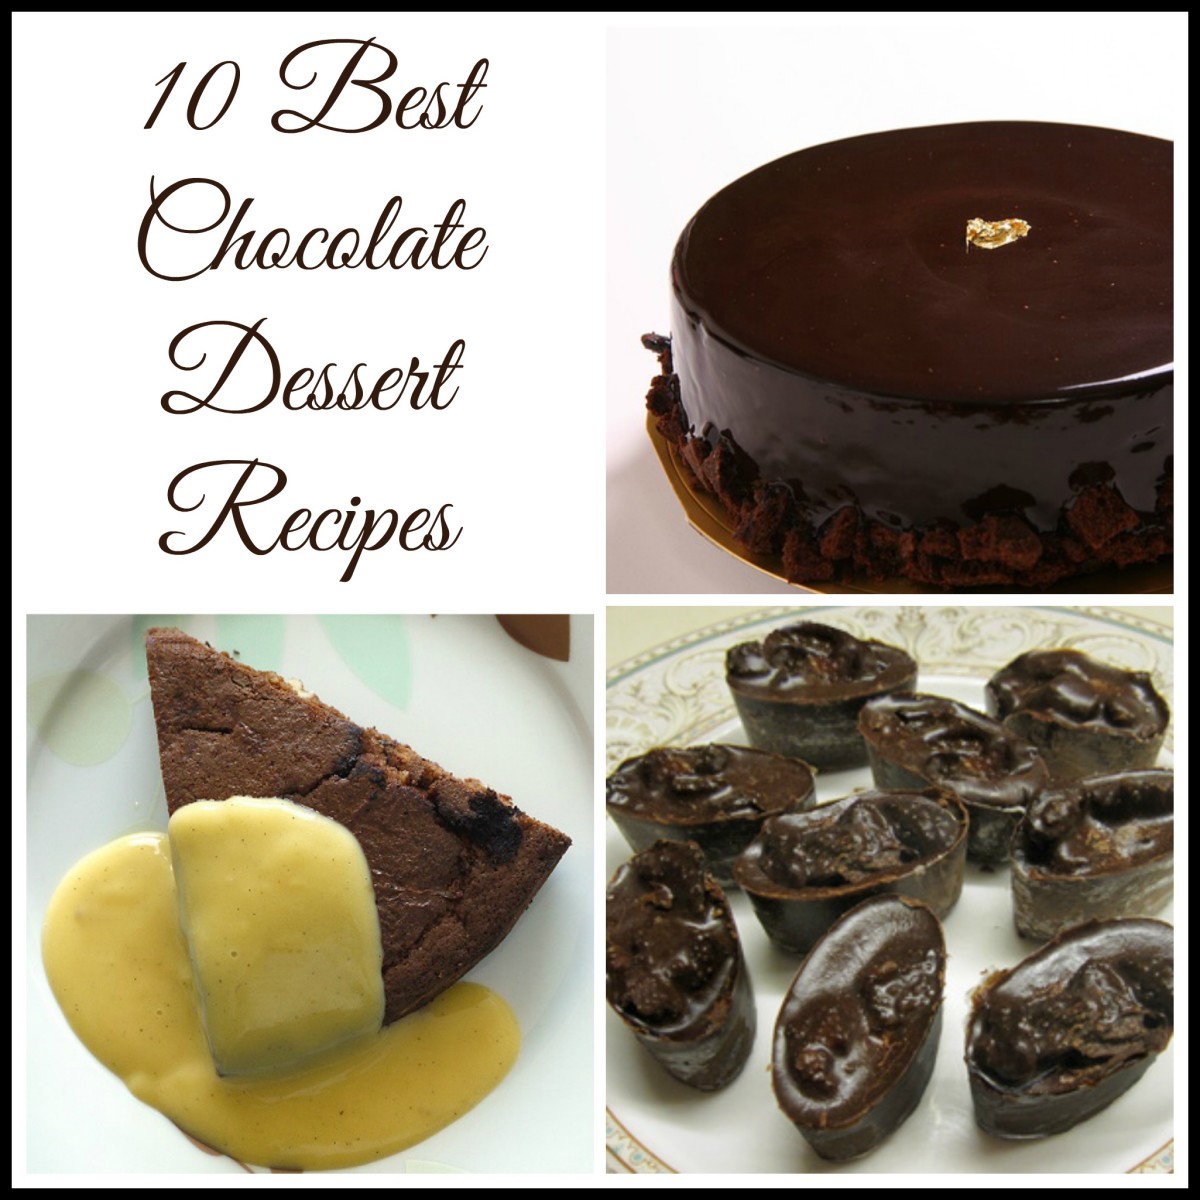 The 10 Best Chocolate Dessert Recipes | Margaret Schindel